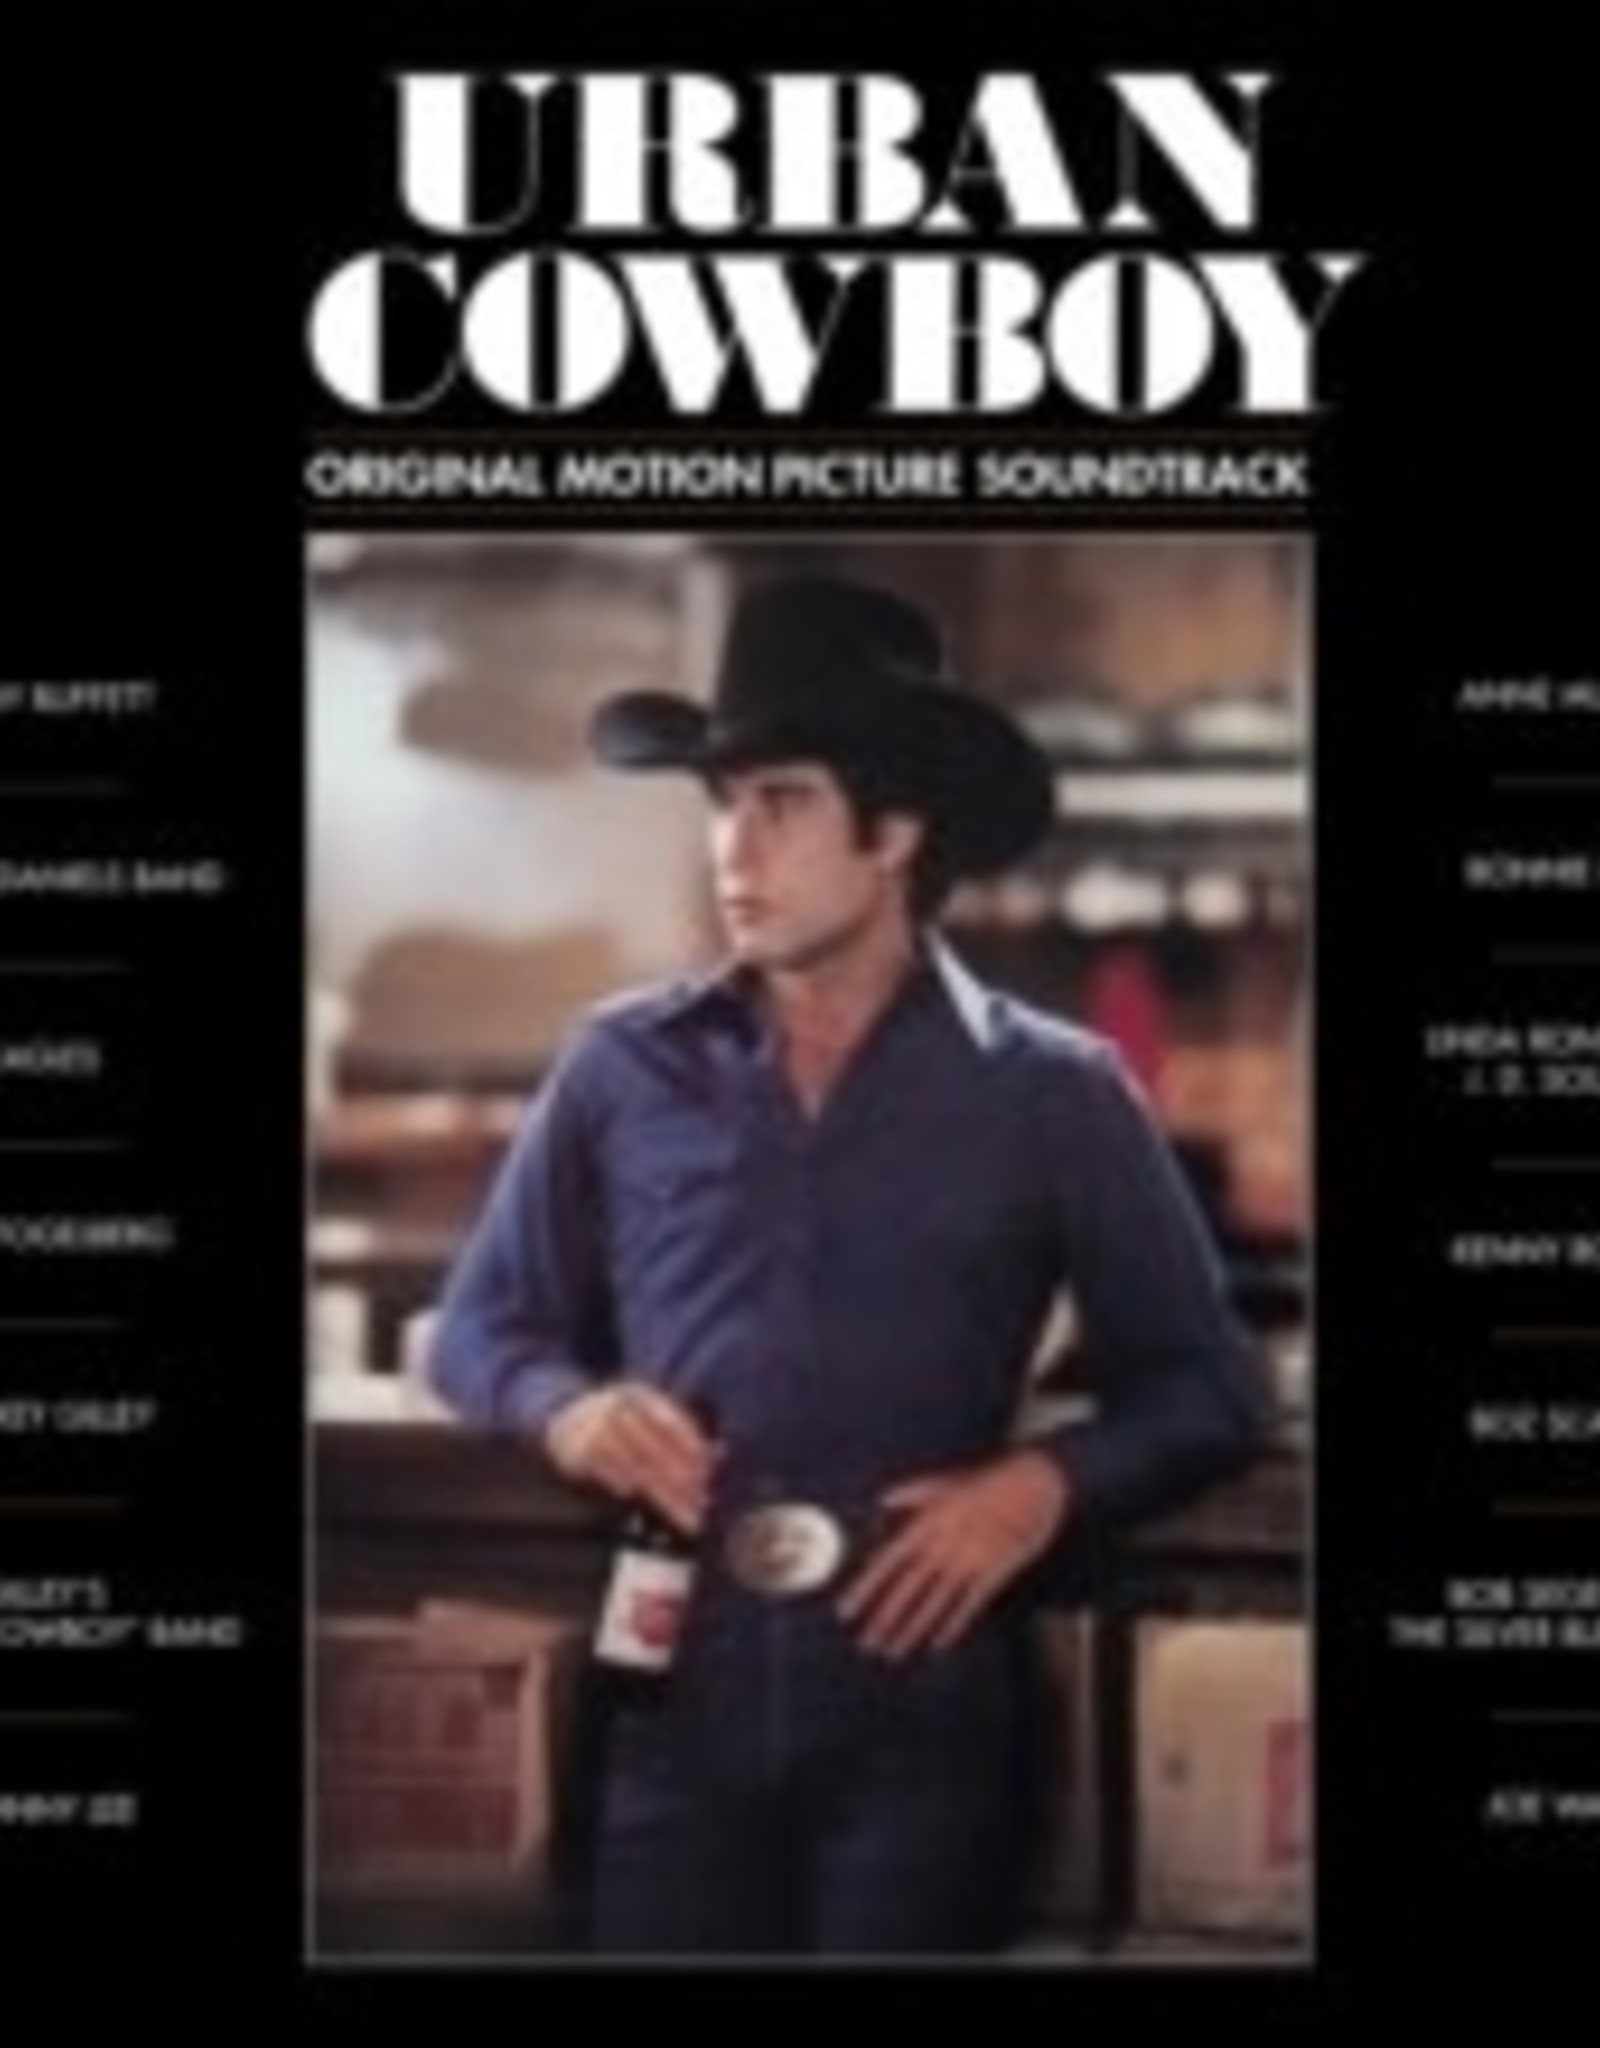 Urban Cowboy - Original Motion Picture Soundtrack (Blue Vinyl, Indie Exclusive)